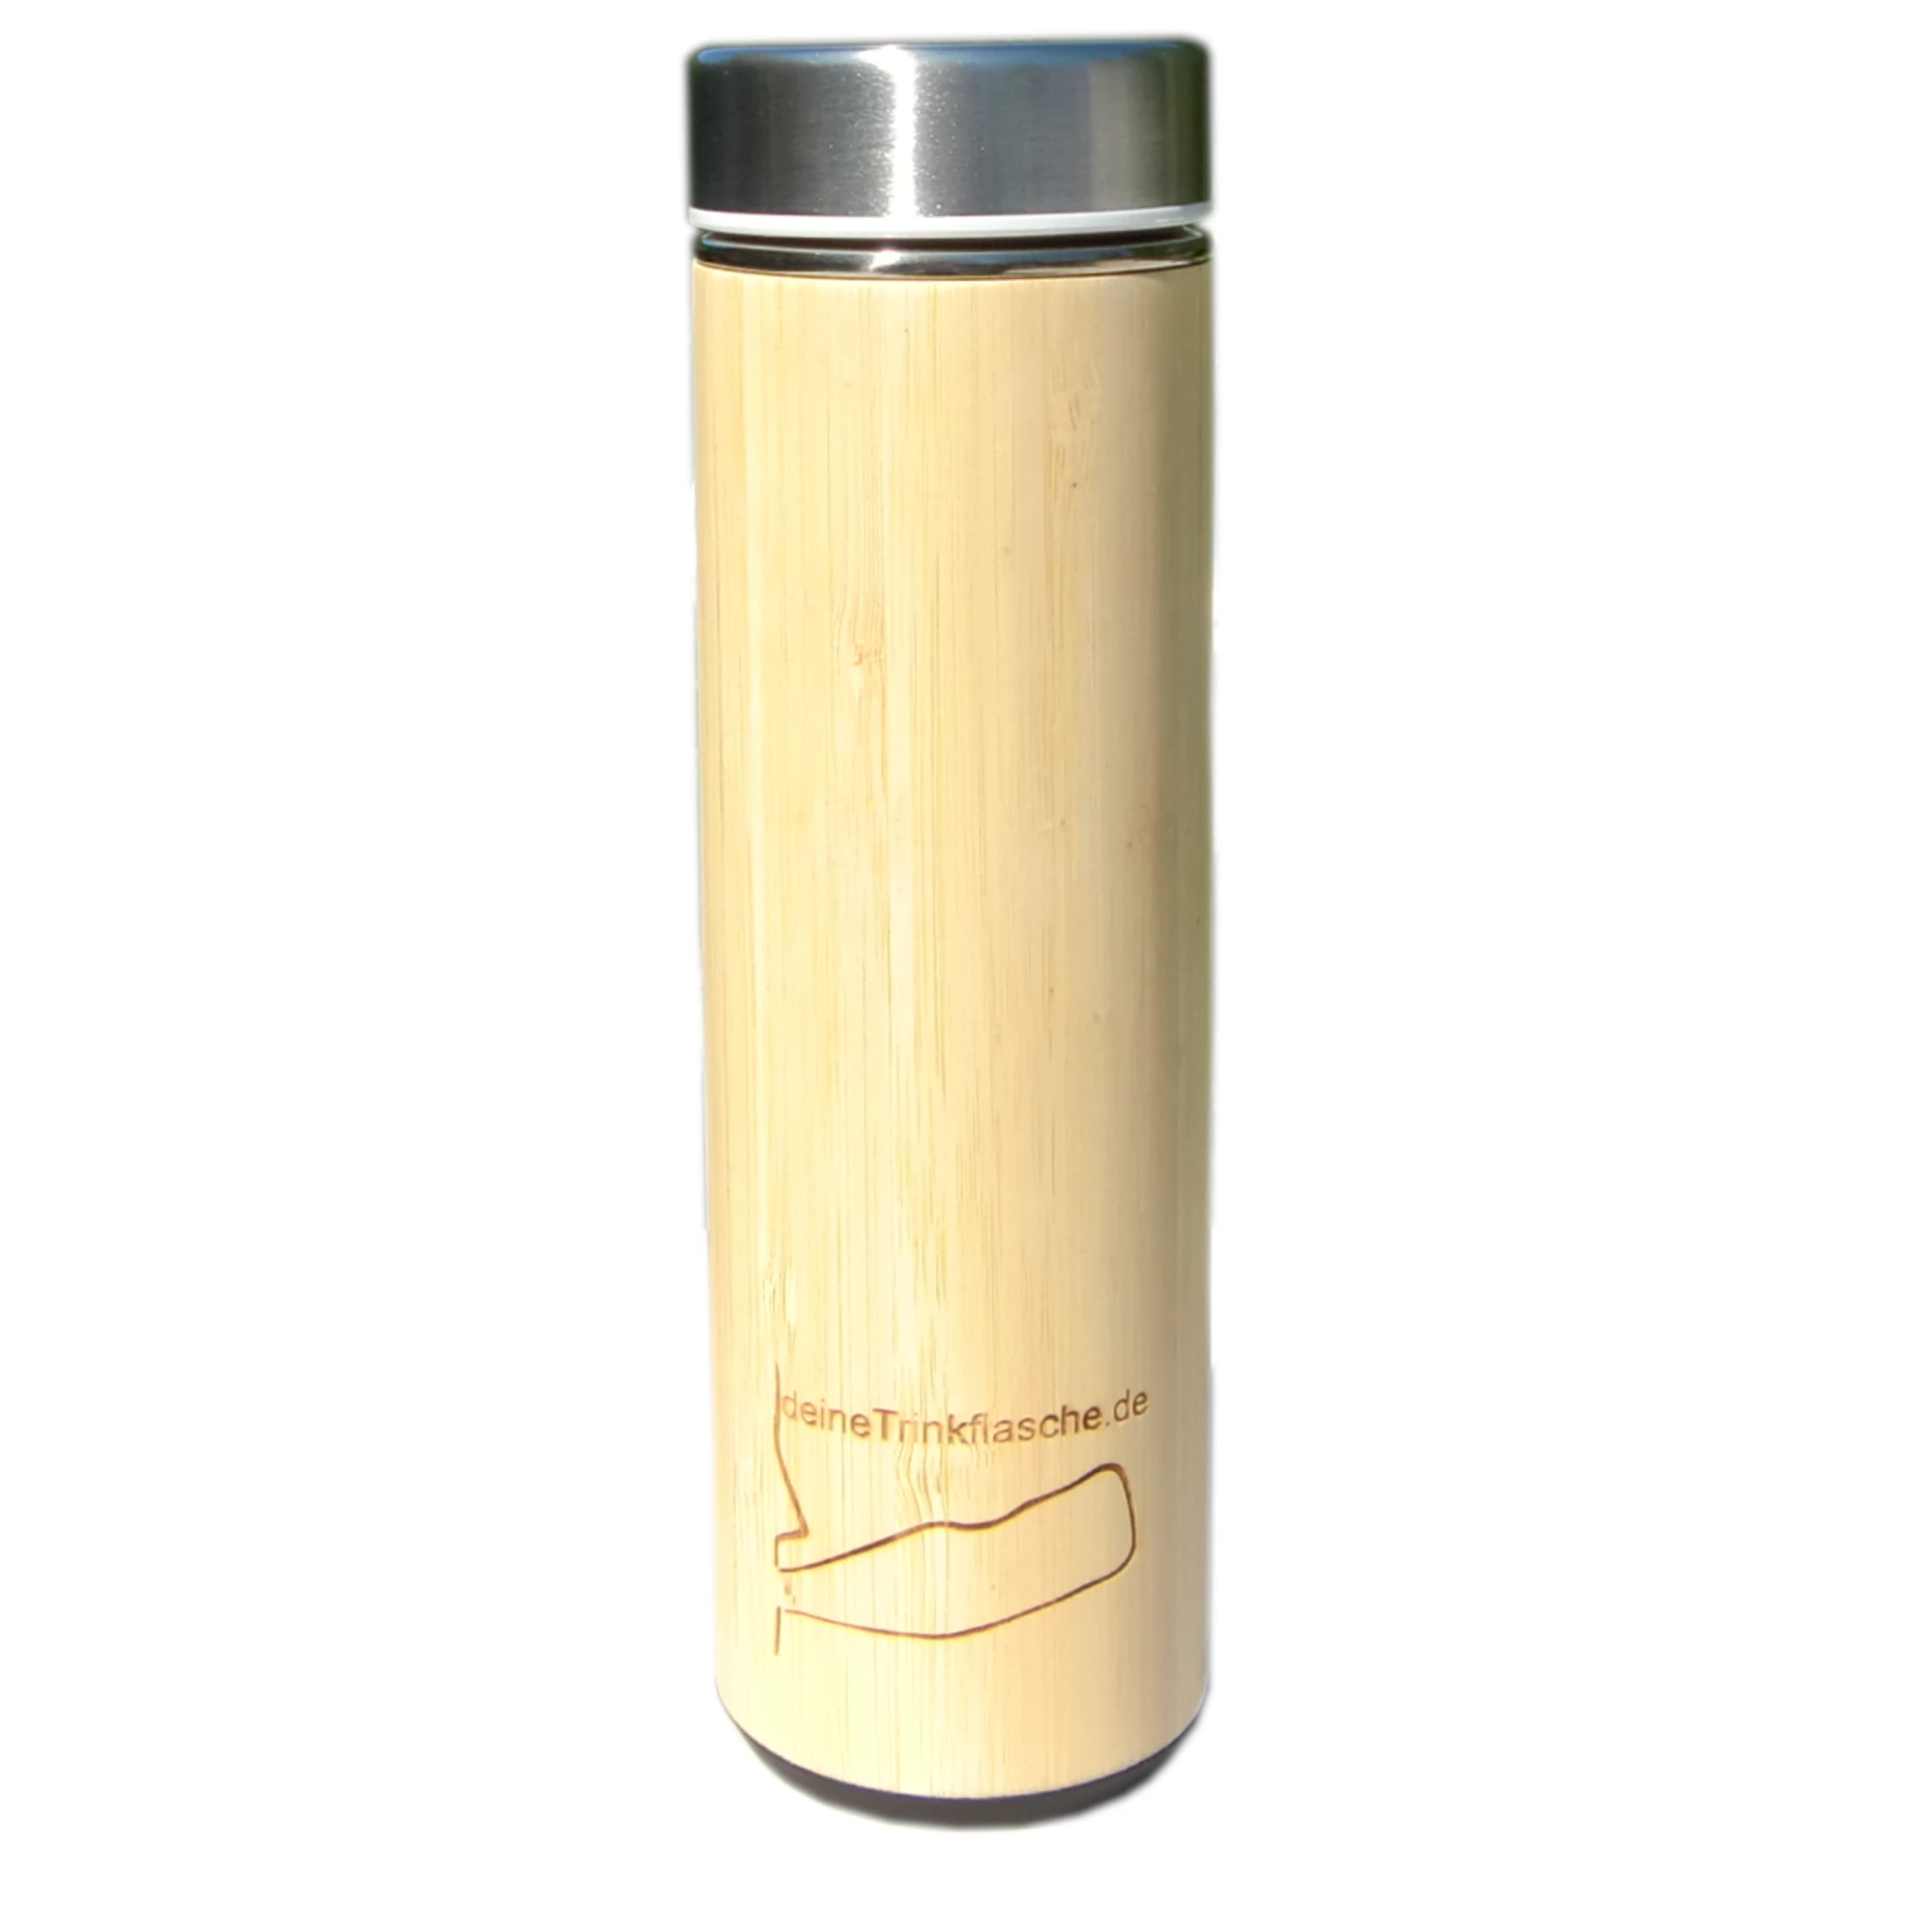 Thermosflasche mit Holzmantel und edelstahldeckel,zylintrisch